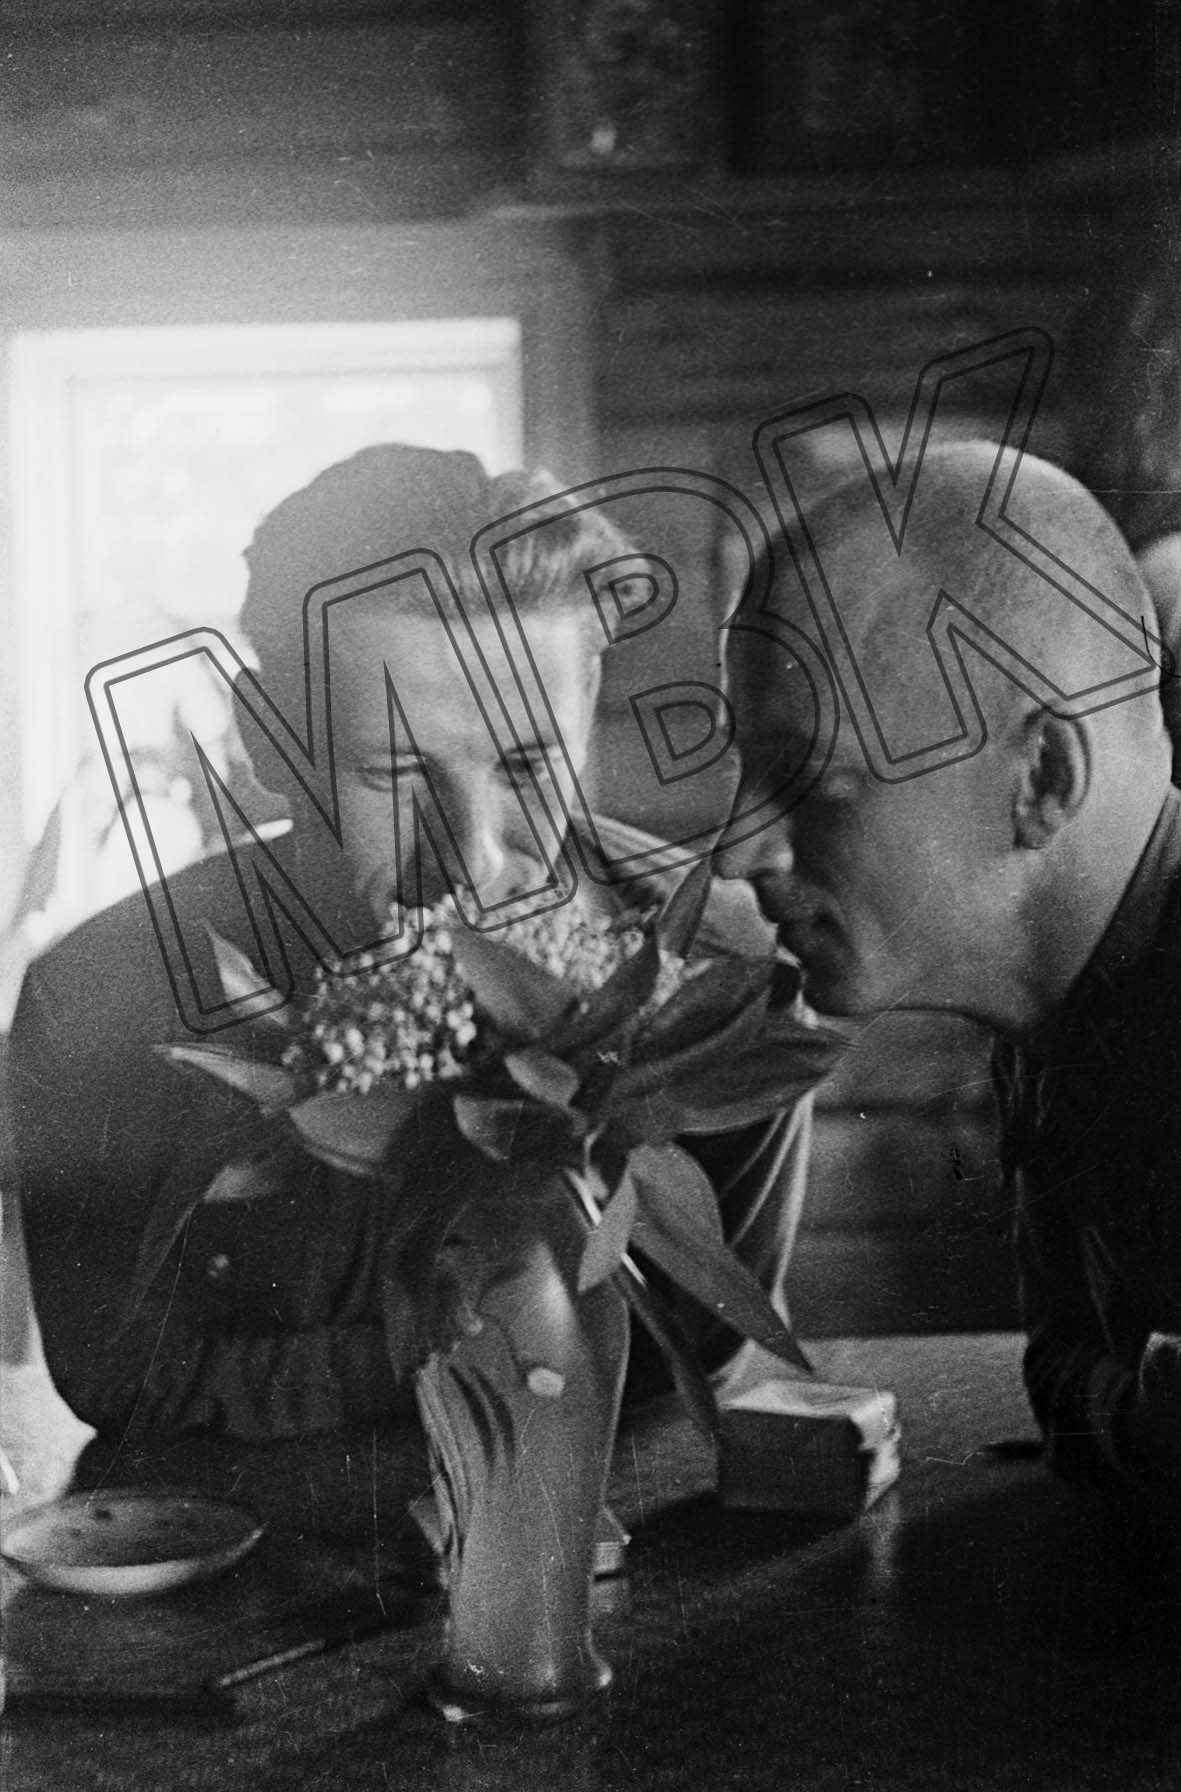 Fotografie: Zwei Soldaten über einem Blumenstrauß gebeugt, Sowjetunion, 1941 (Museum Berlin-Karlshorst RR-P)